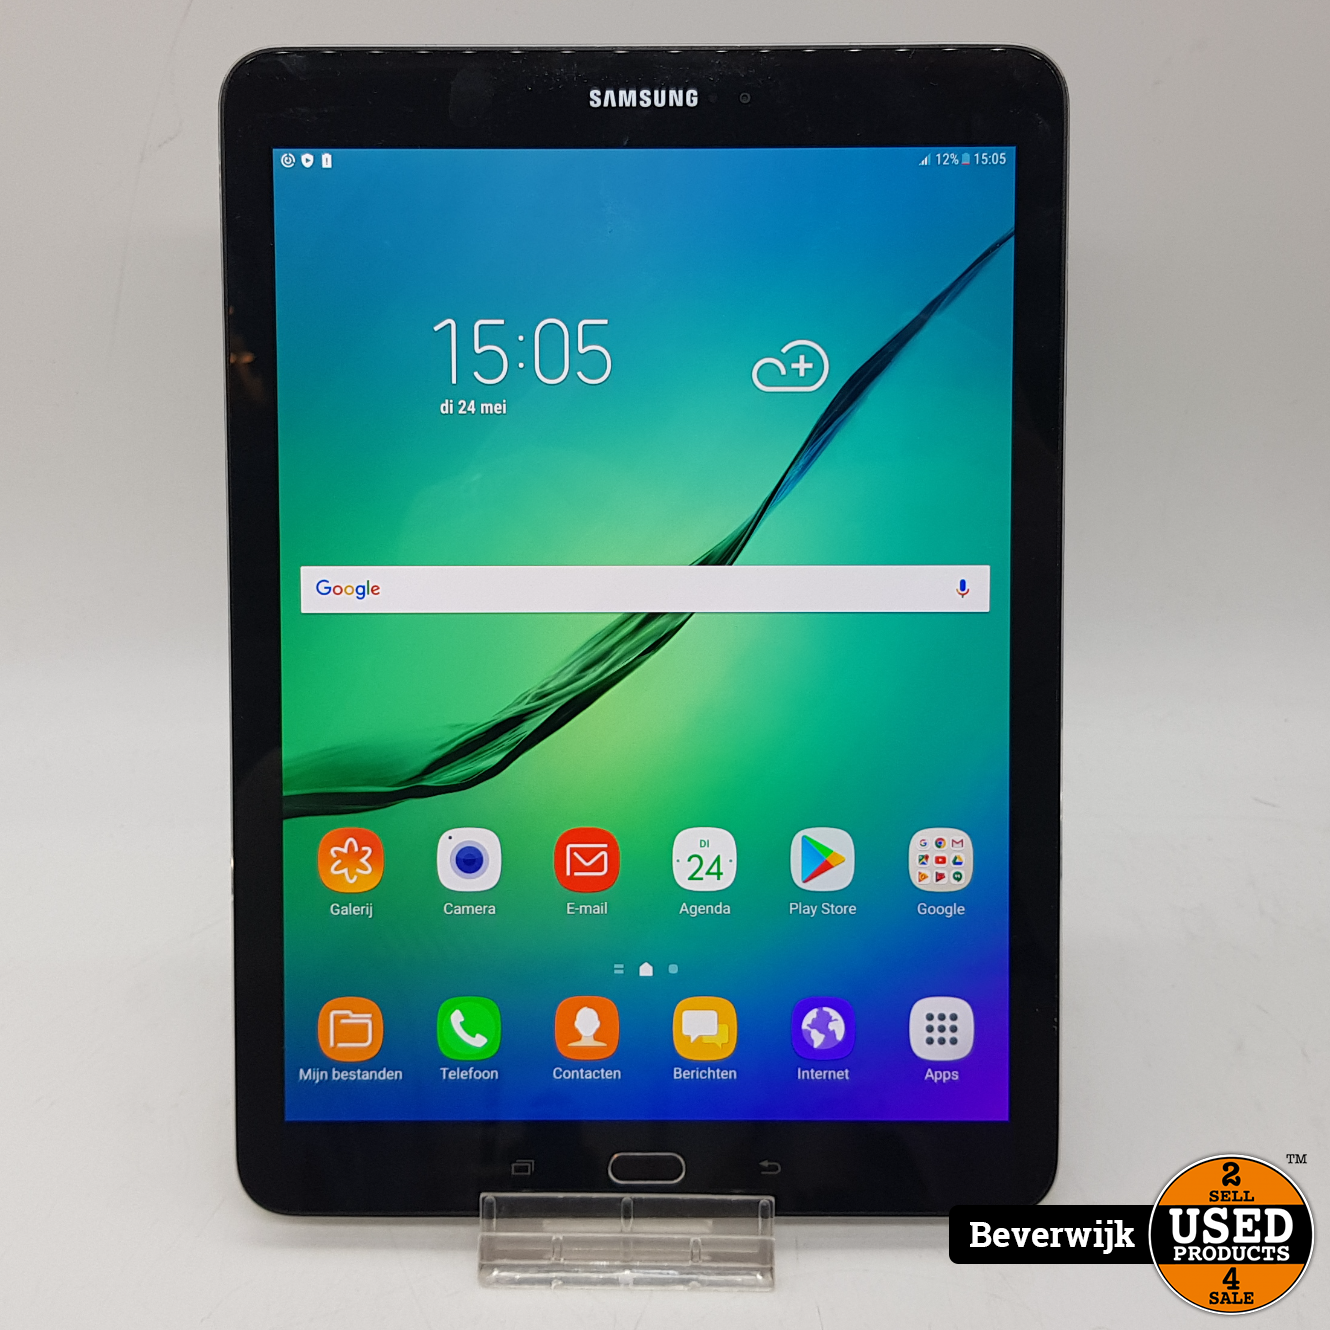 Zuidelijk Sanders Hoelahoep Samsung Galaxy Tab S2 32GB Zwart - In Goede Staat! - Used Products Beverwijk